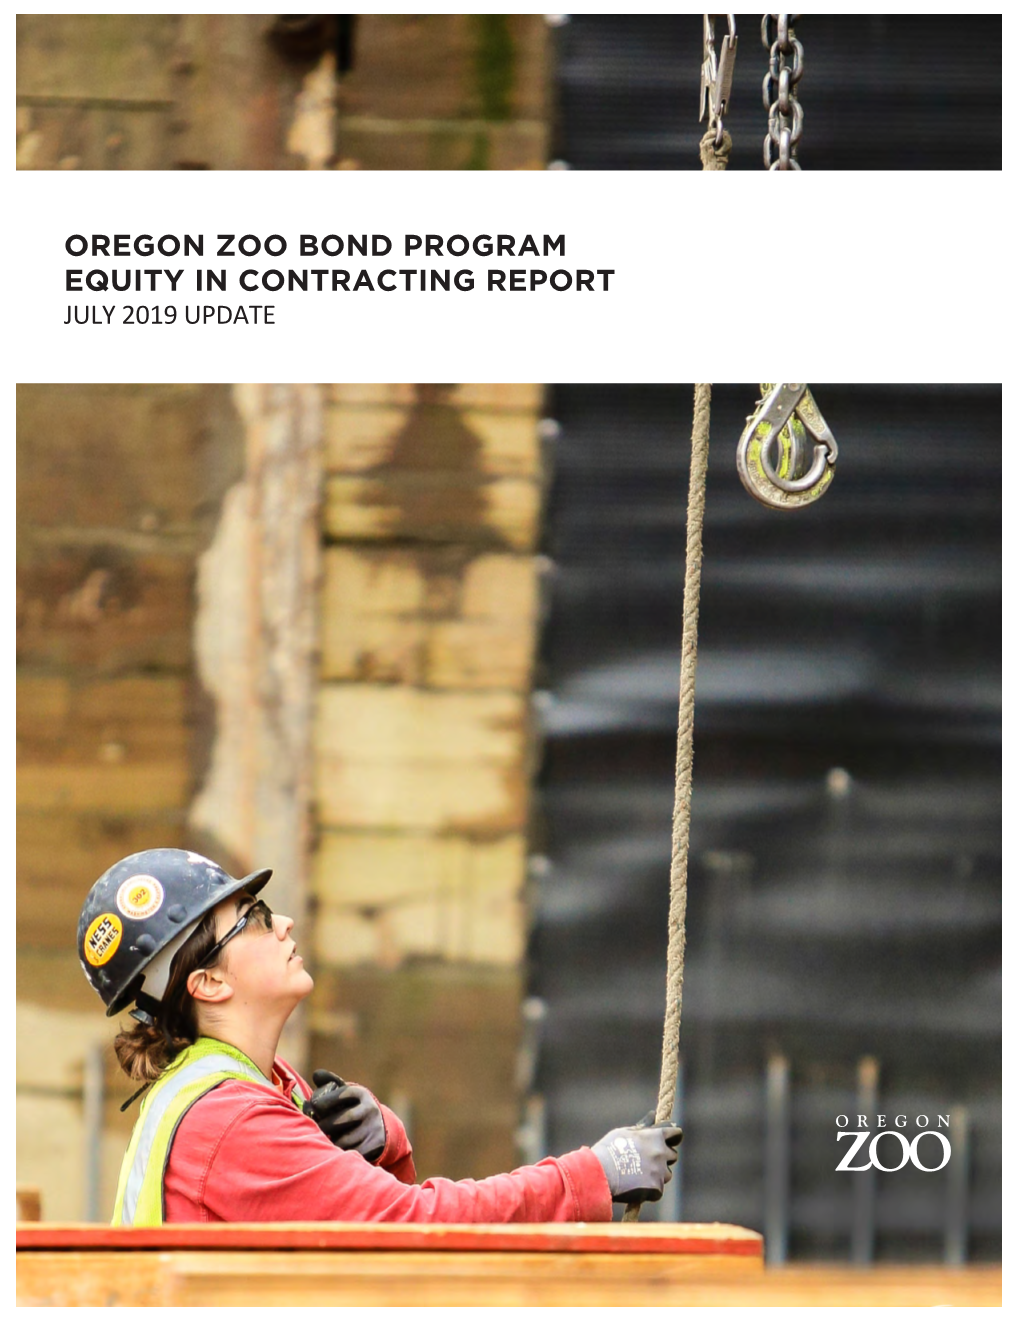 Oregon Zoo Bond Program Equity in Contracting Report